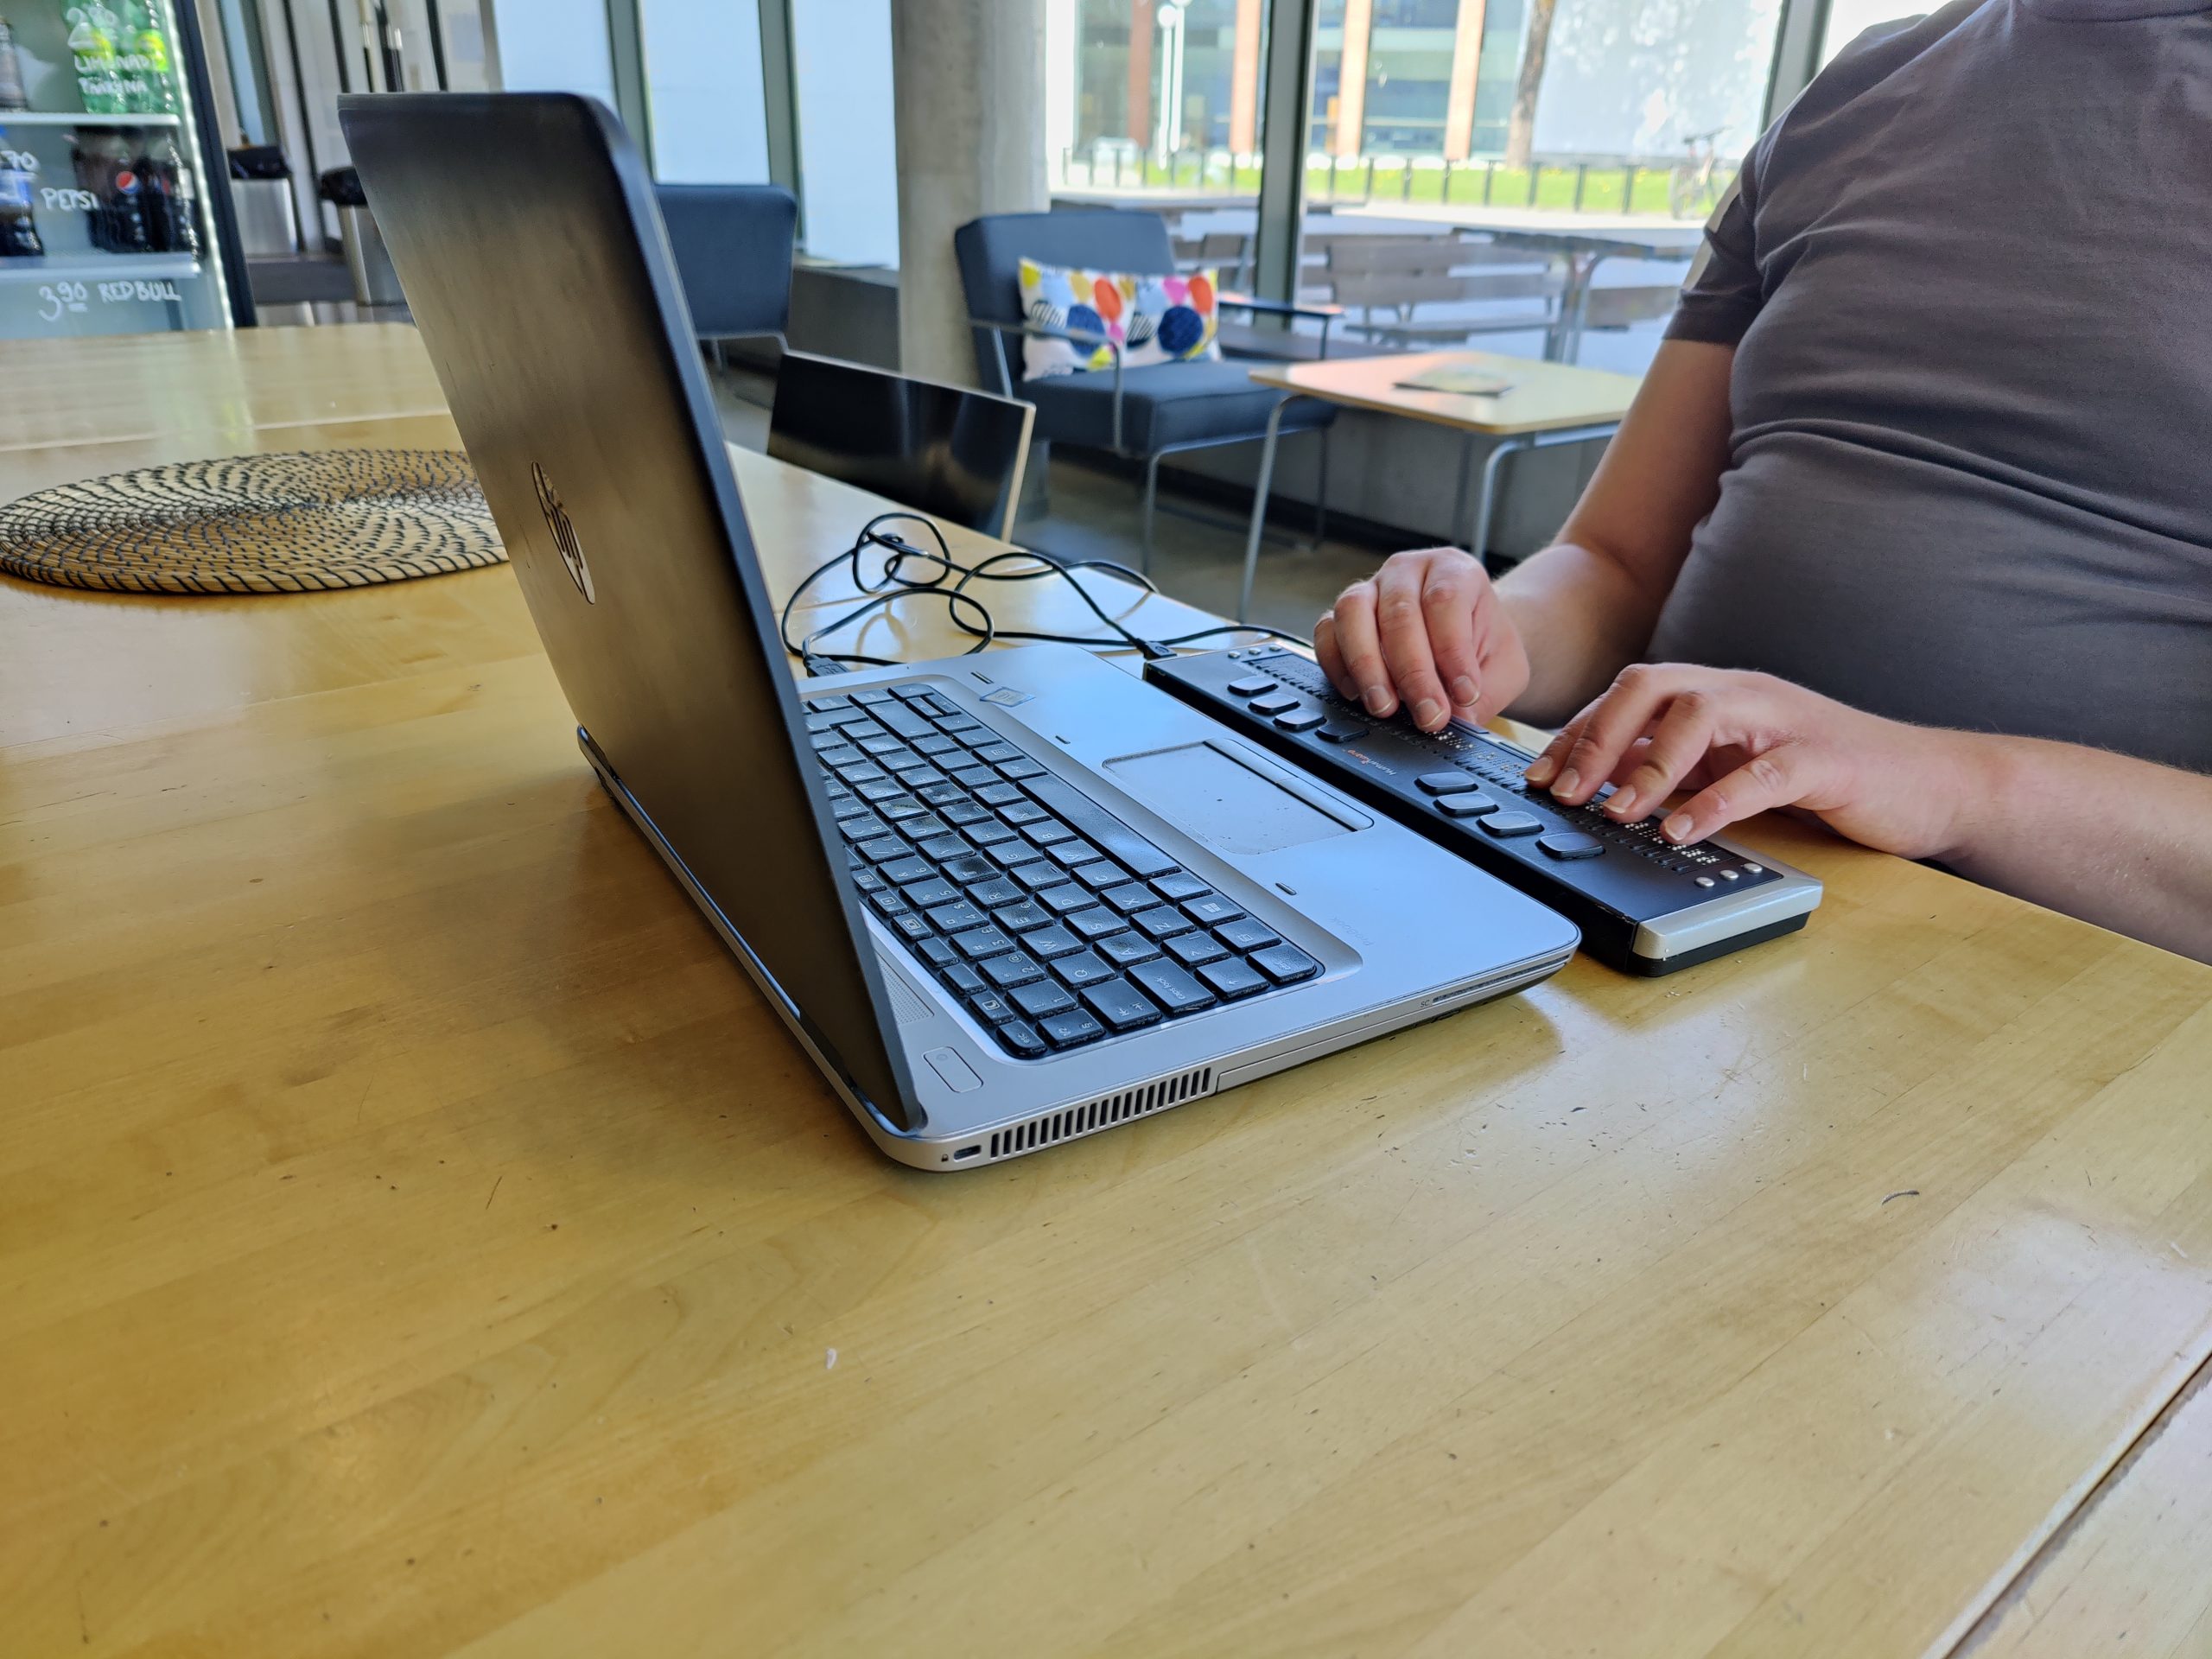 Lähikuva pistenäyttöä käyttävistä käsistä, pistenäyttö on kannettavan tietokoneen edessä pöydällä.